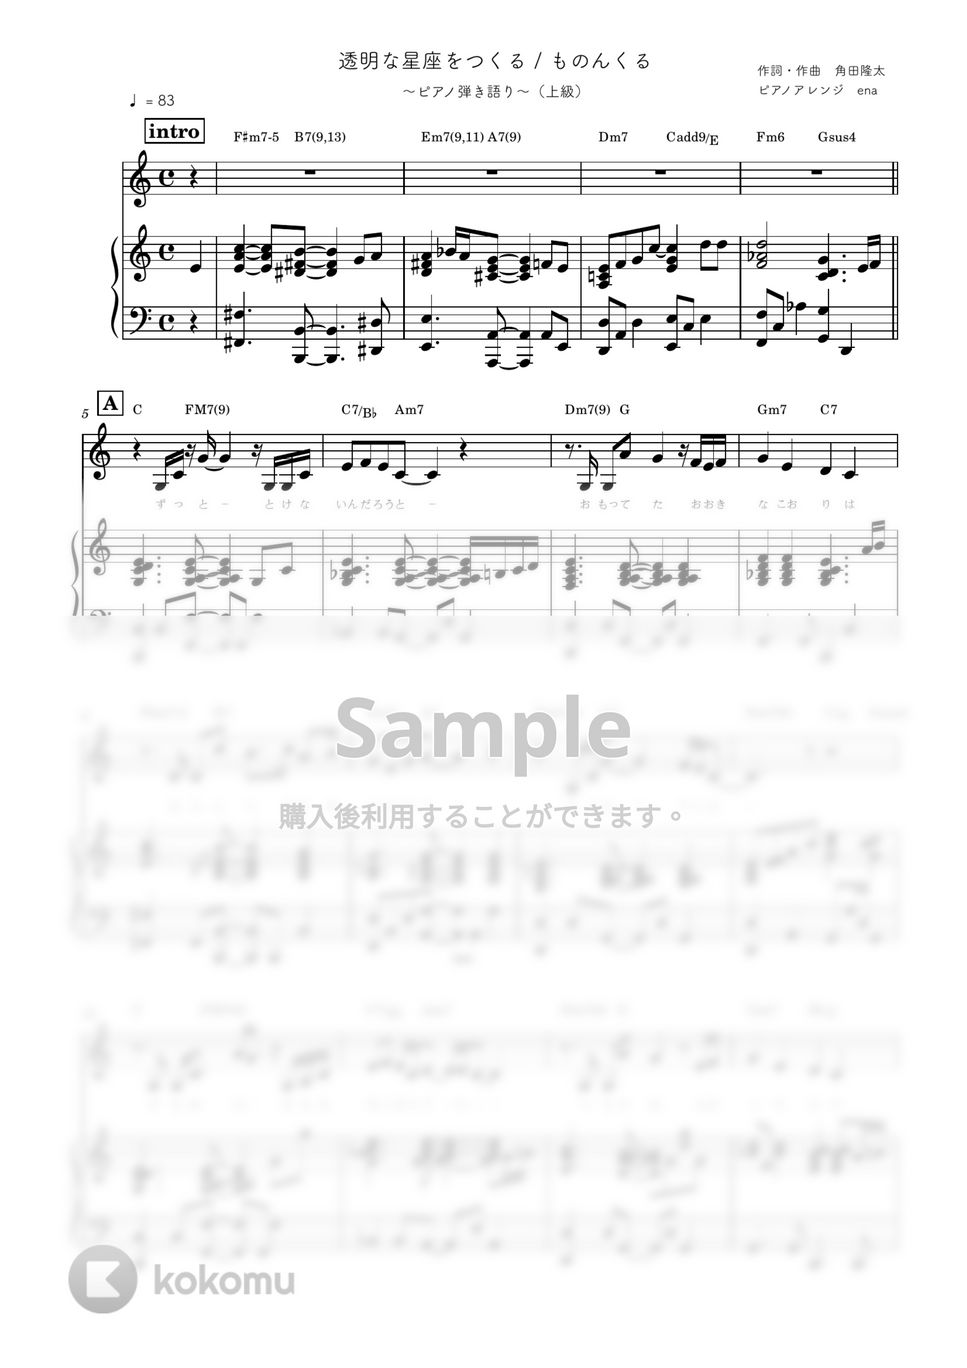 ものんくる - 透明な星座をつくる (ピアノ弾き語り / 上級 / 歌詞・コード付き) by ena